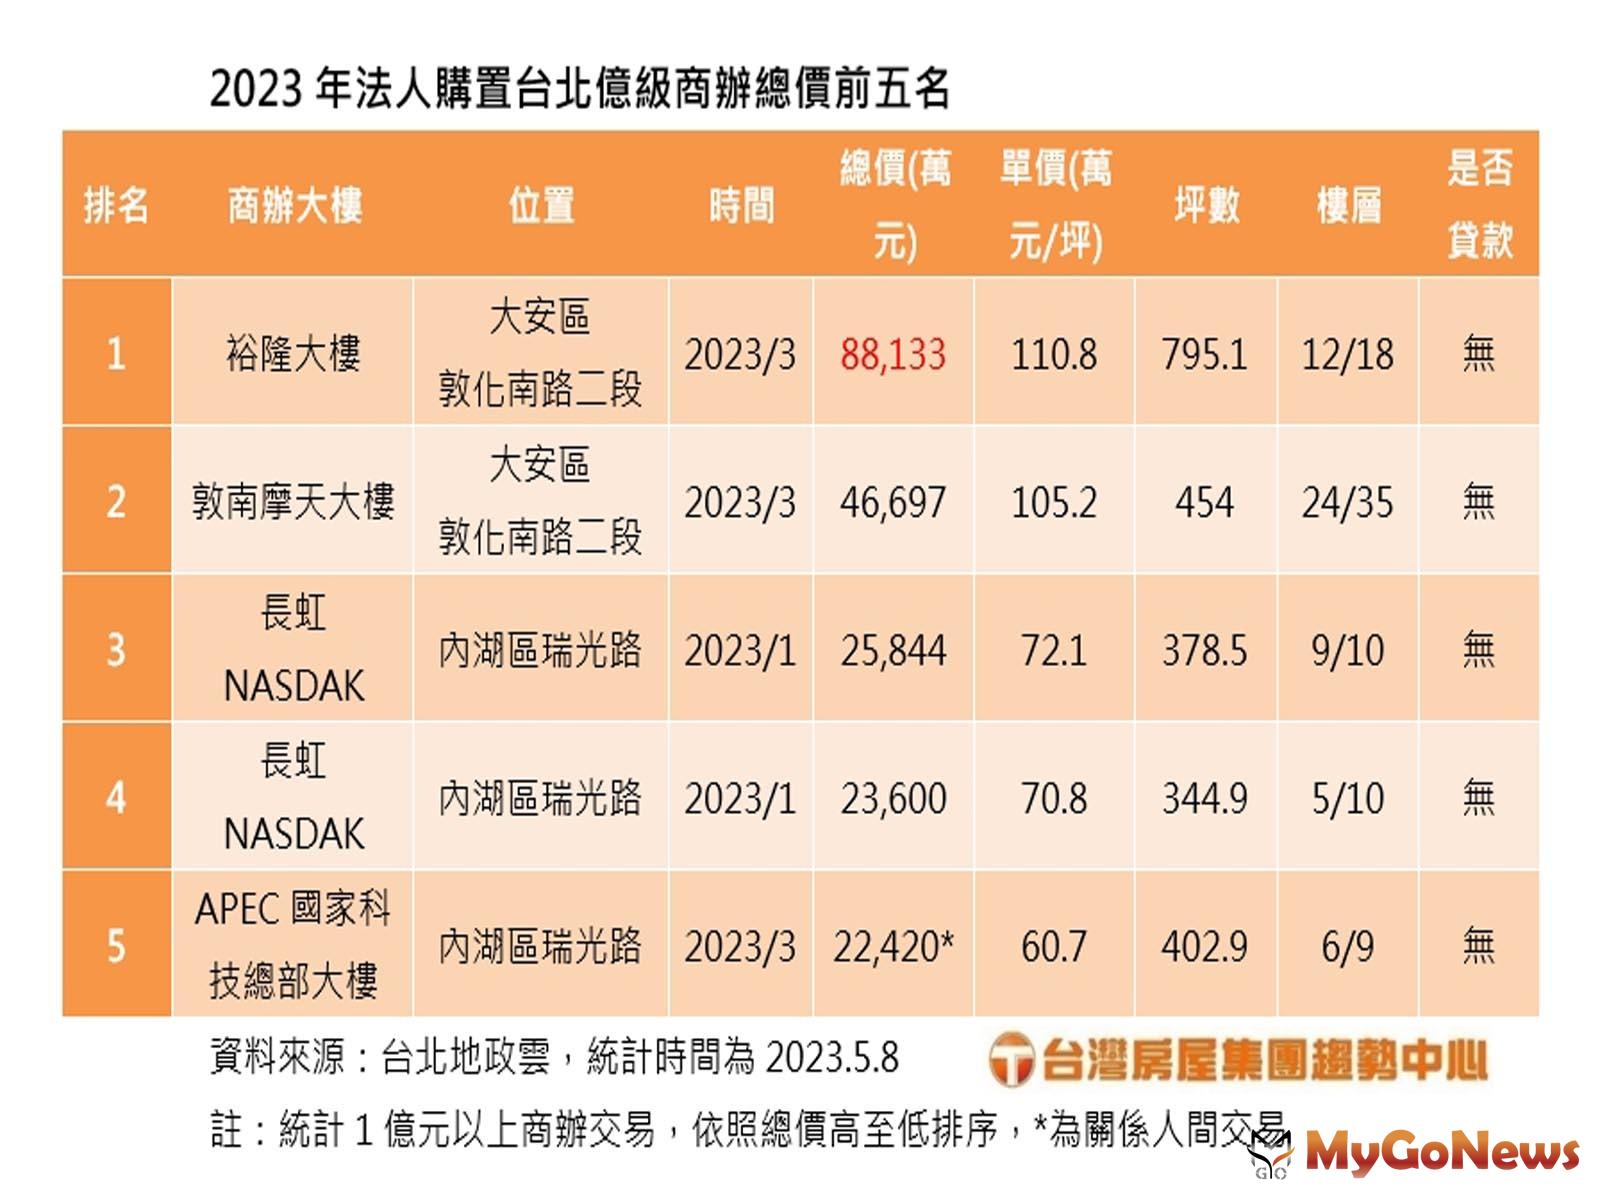 2023年法人購置台北億級商辦總價前五名(圖/台灣房屋提供)  MyGoNews房地產新聞 市場快訊